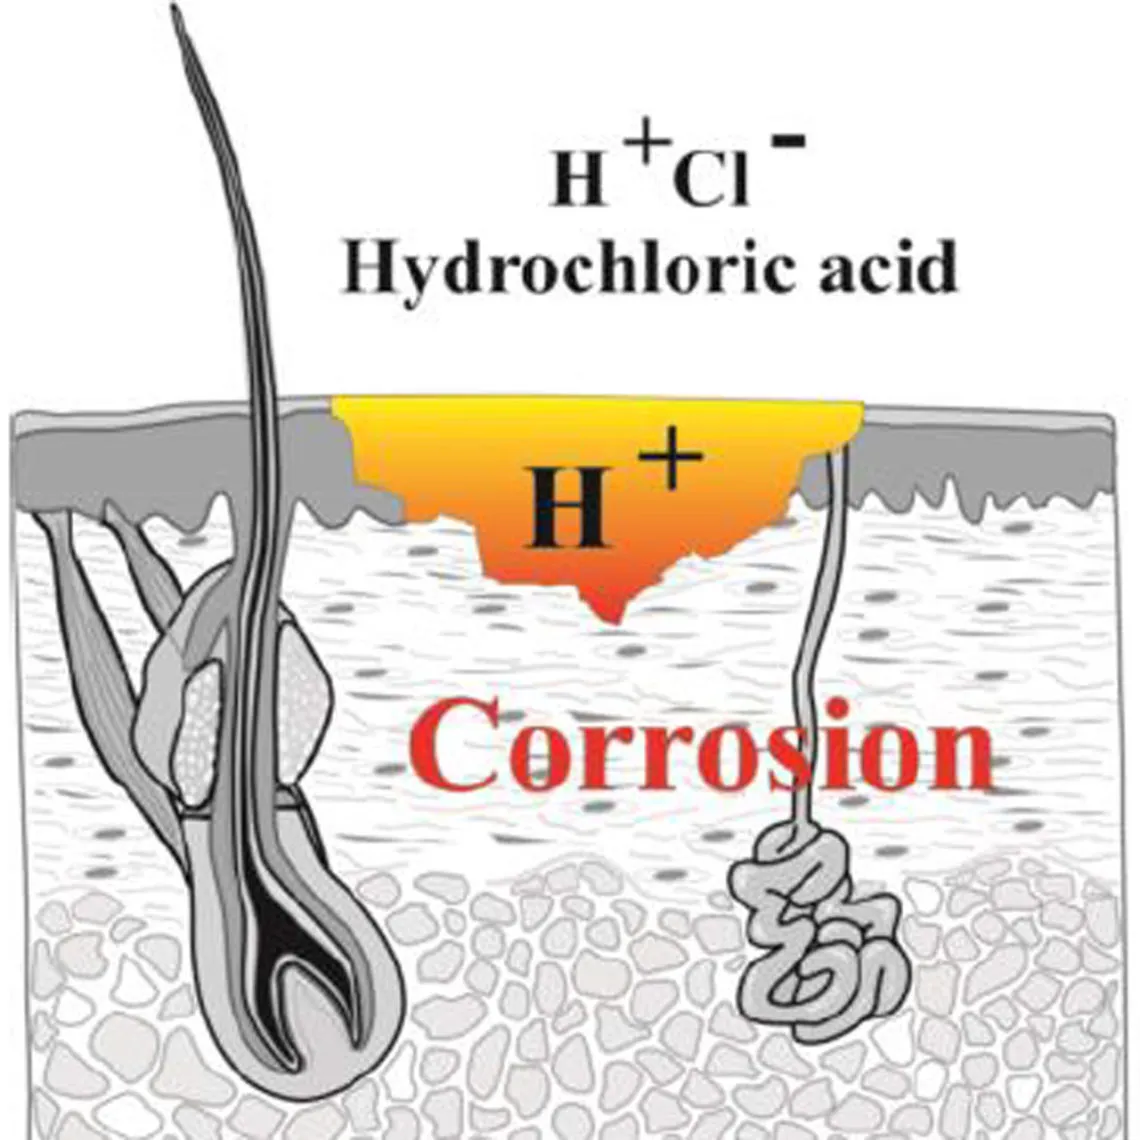 diagramme montrant les effets de l'acide chlorhydrique sur l'organisme en contact avec lui : corrosion